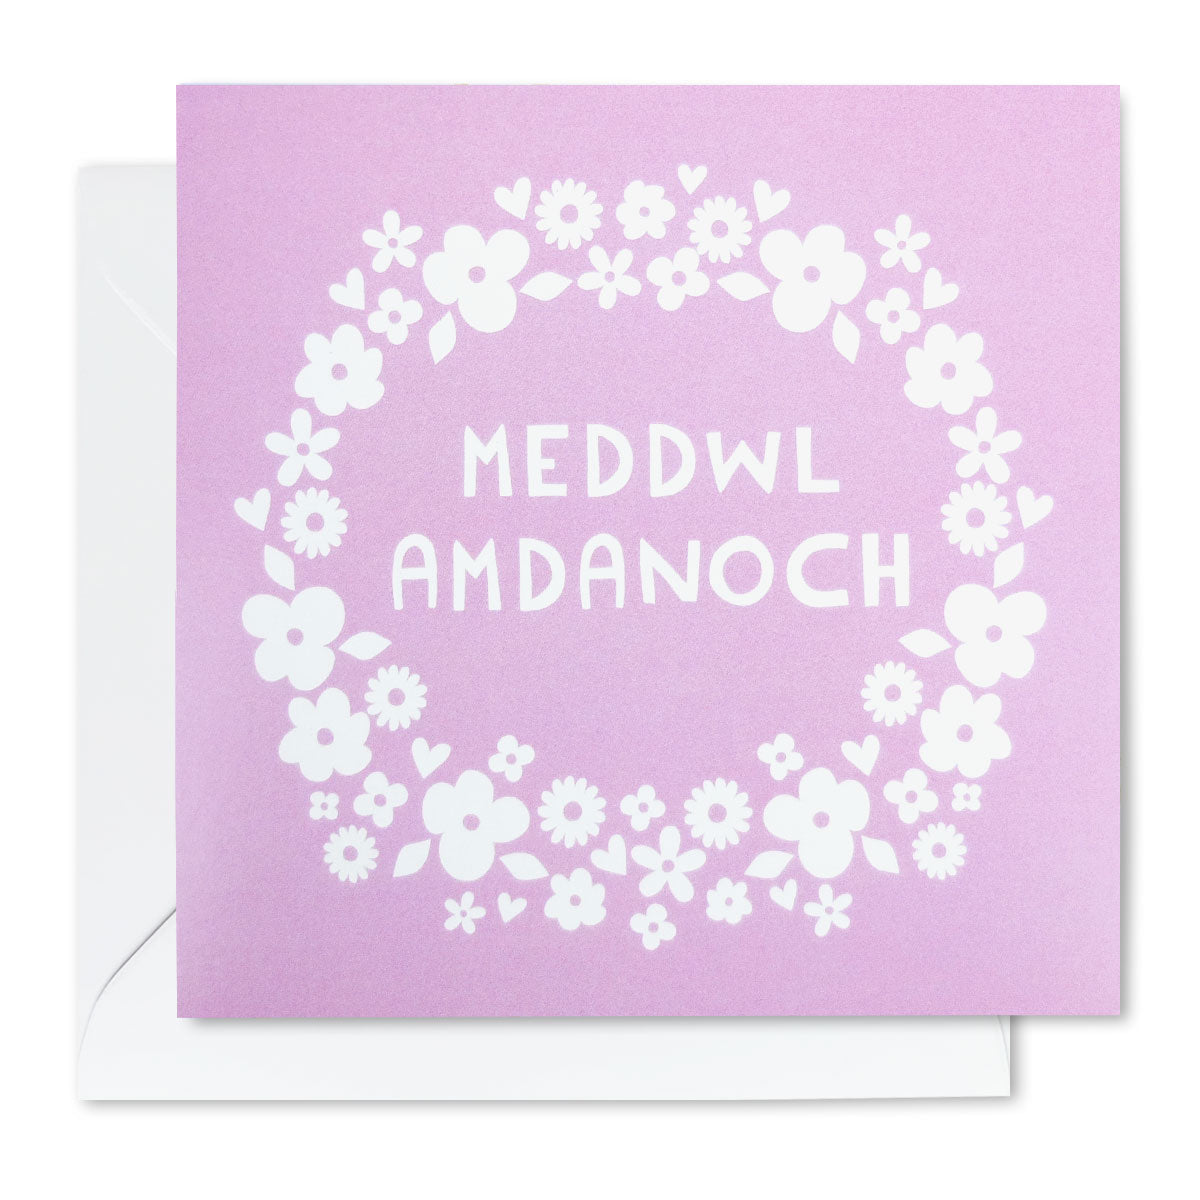 Meddwl Amdanoch Thinking of You Card